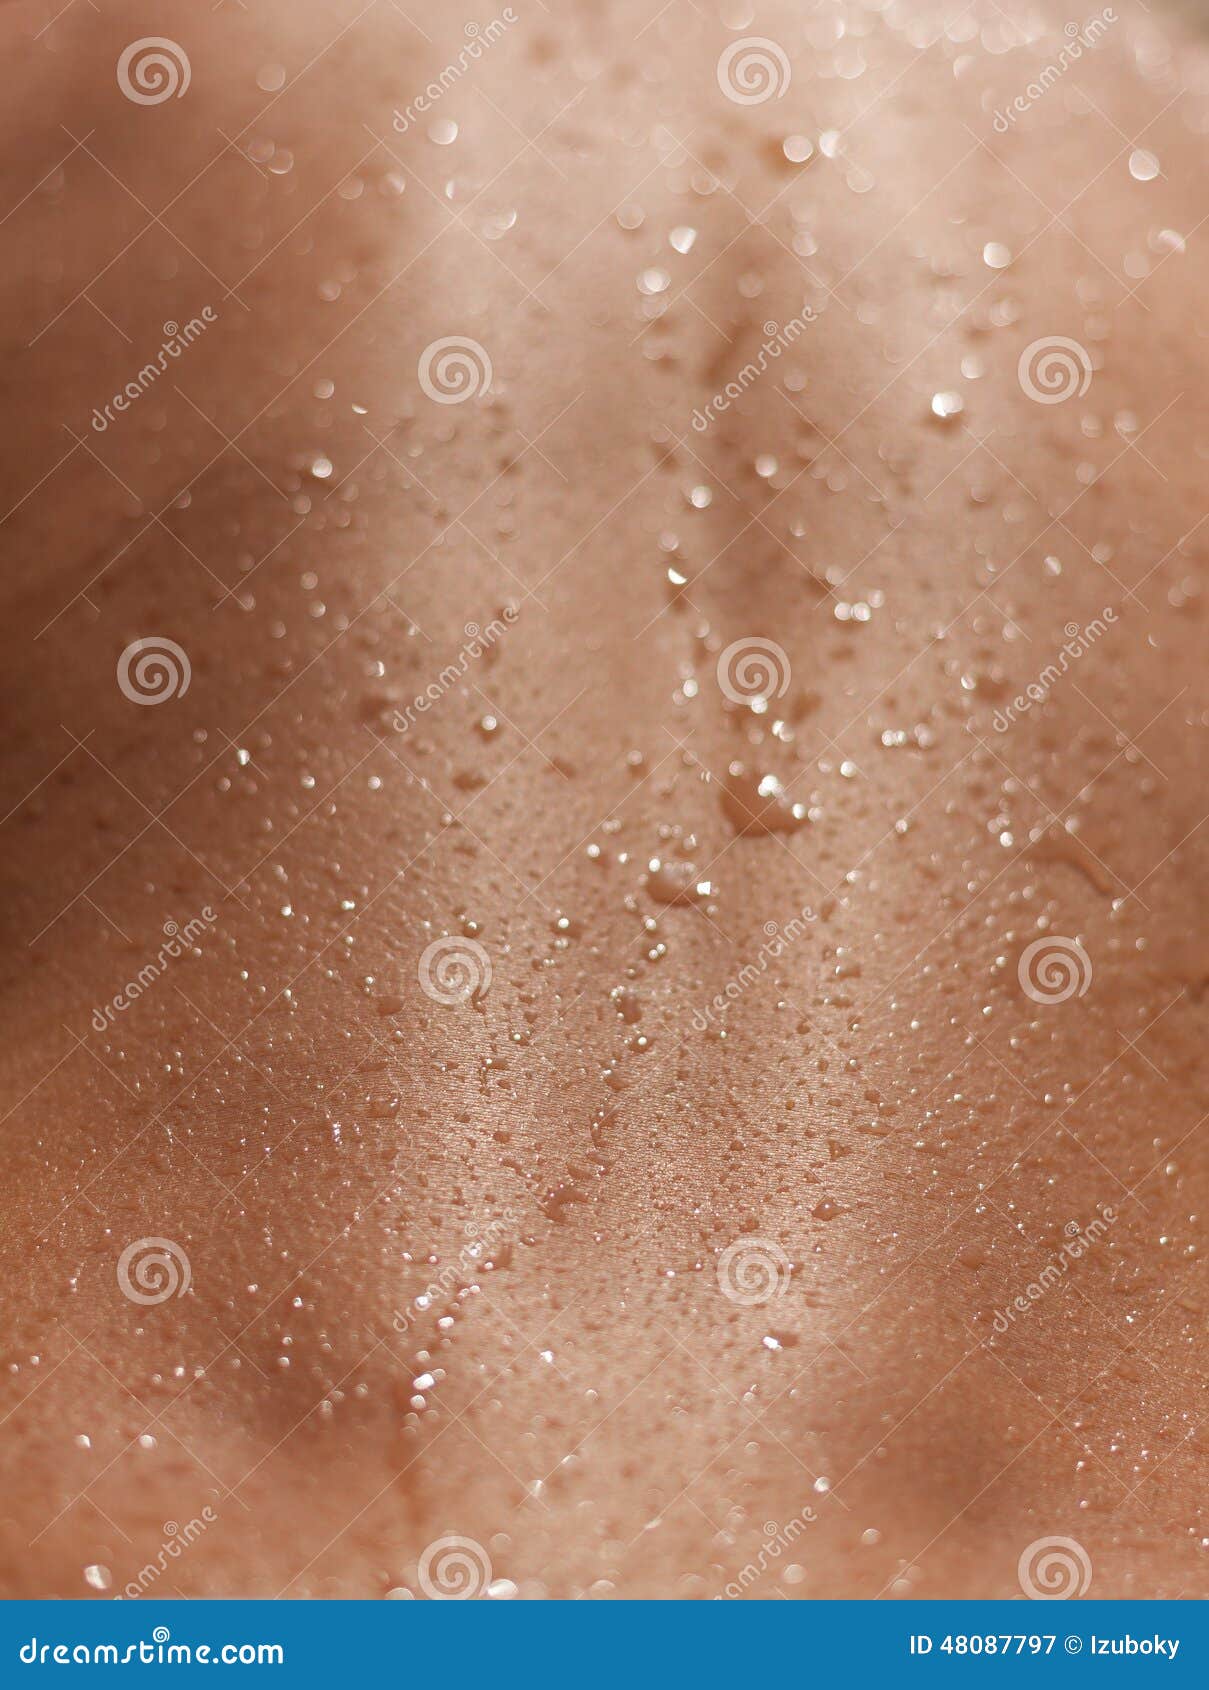 skin sun tan wet closeup texture background human back